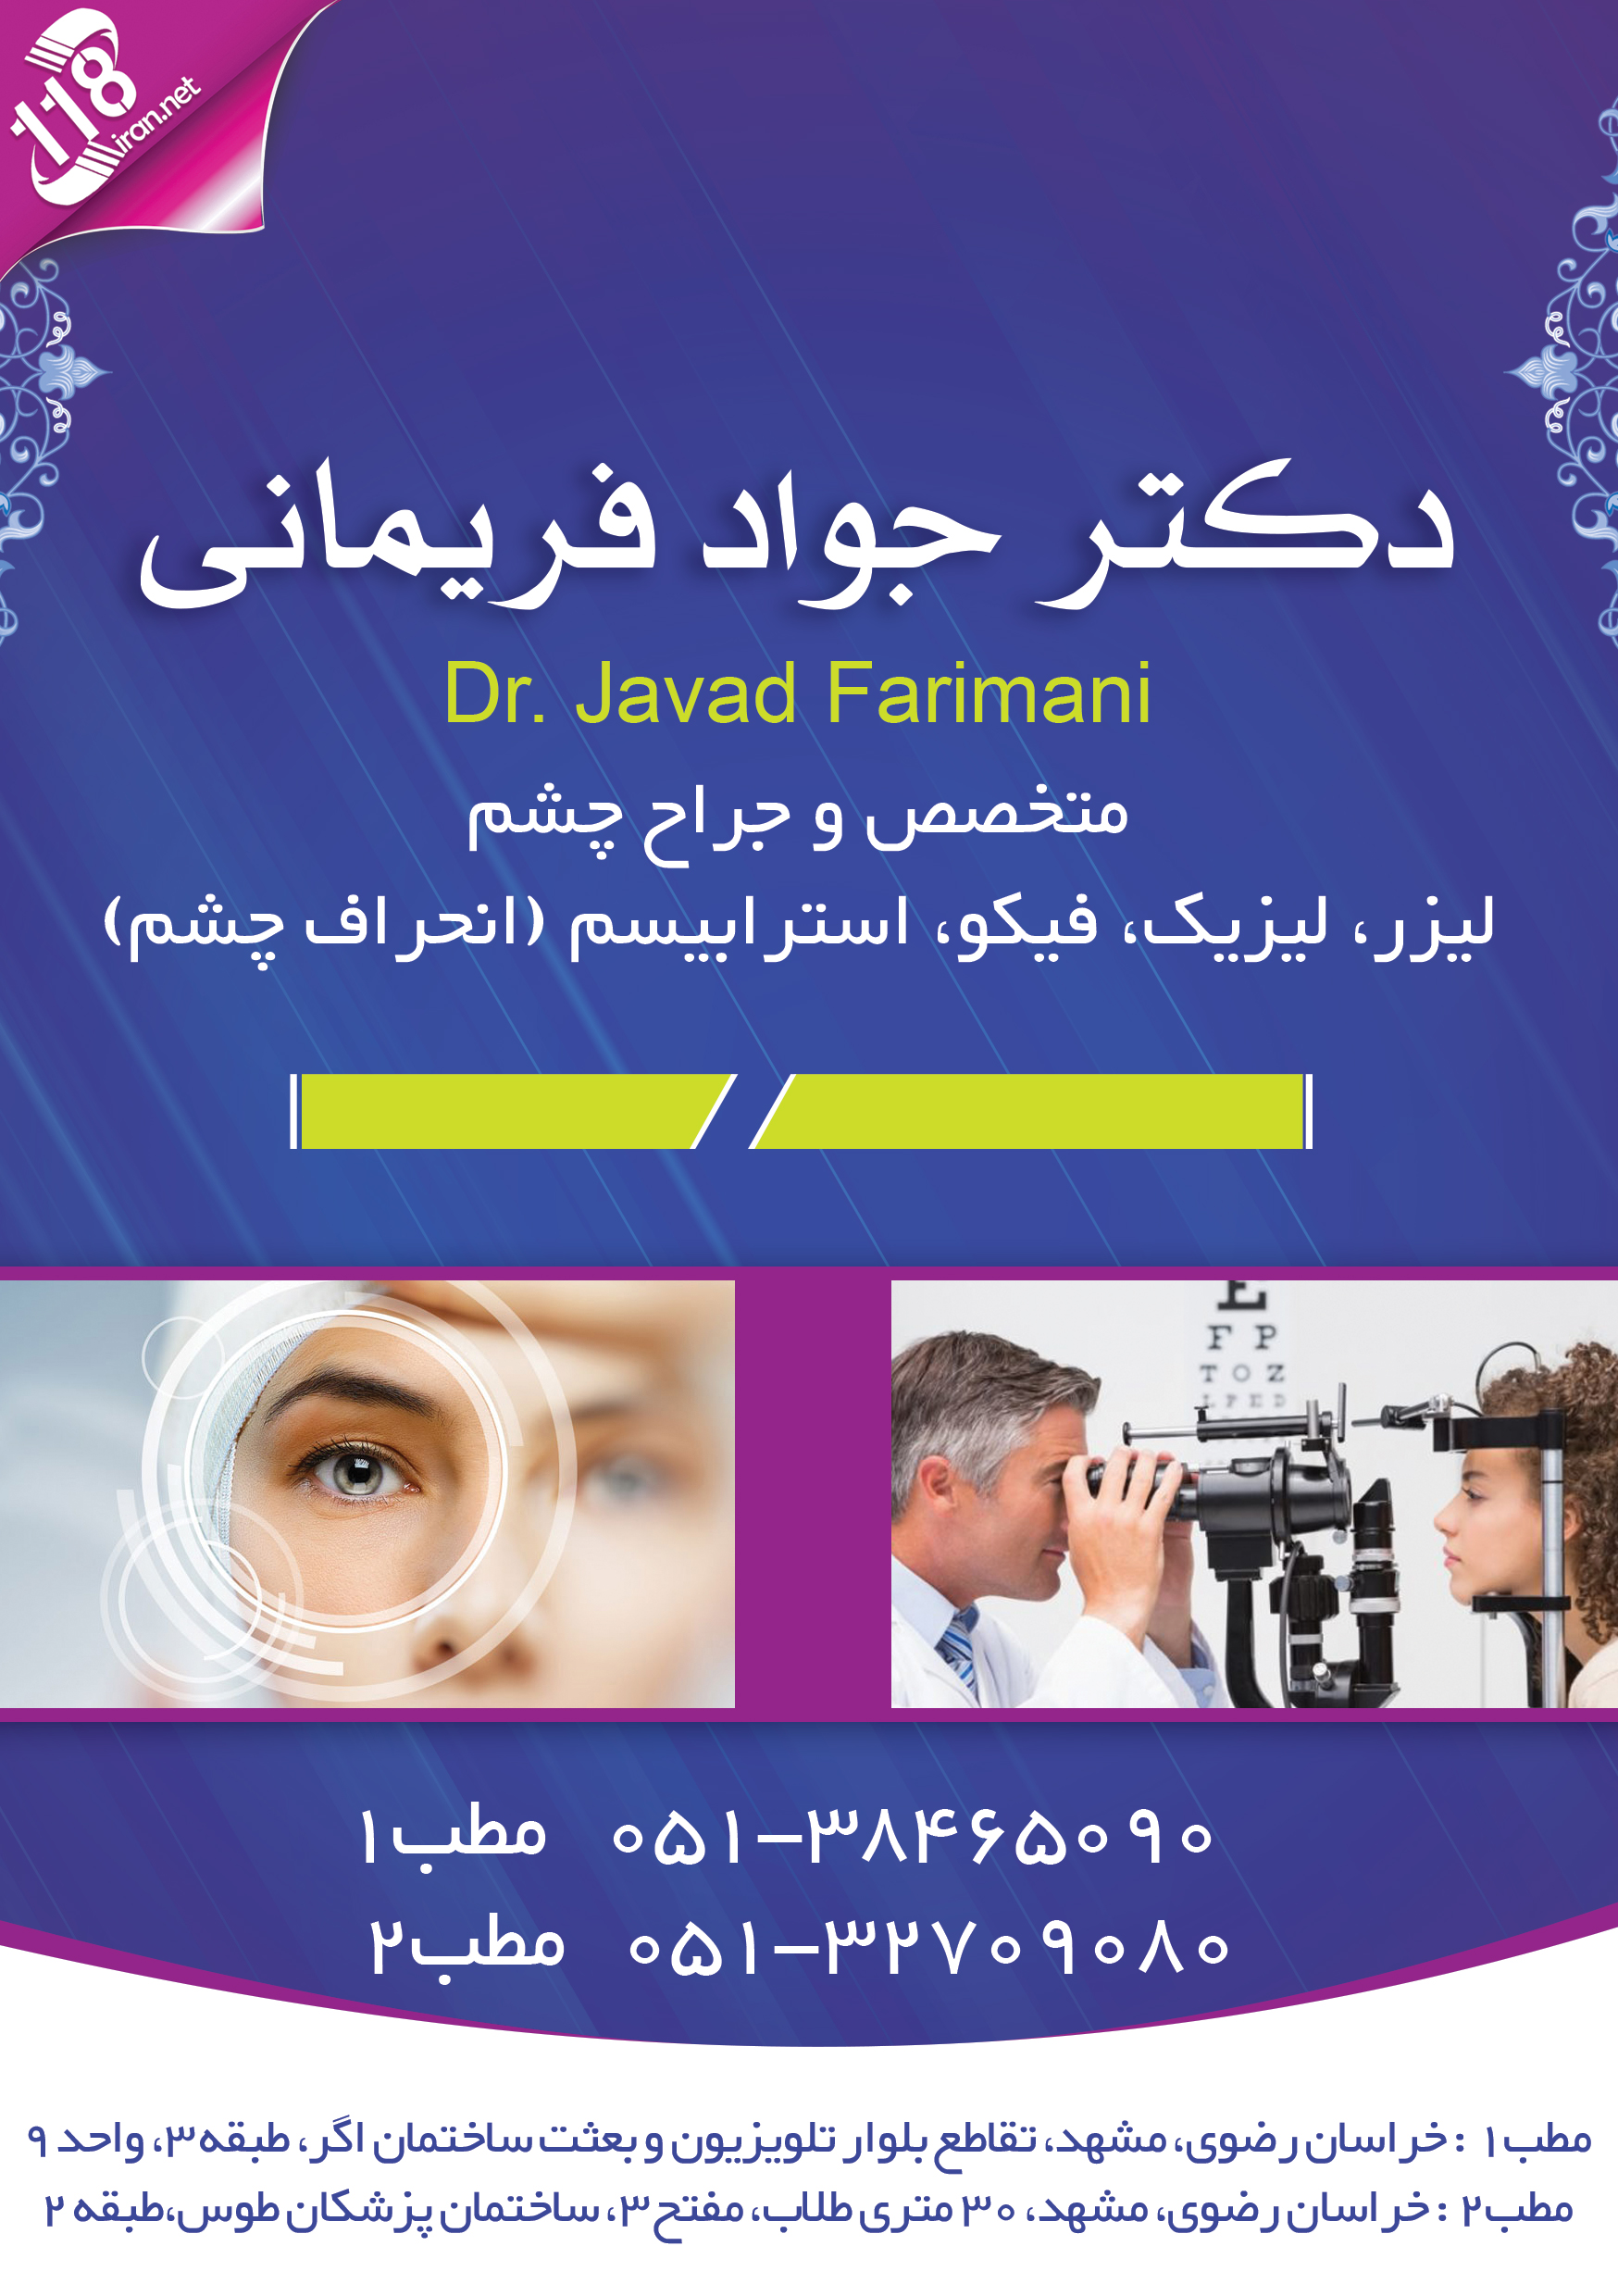 دکتر جواد فریمانی در مشهد 